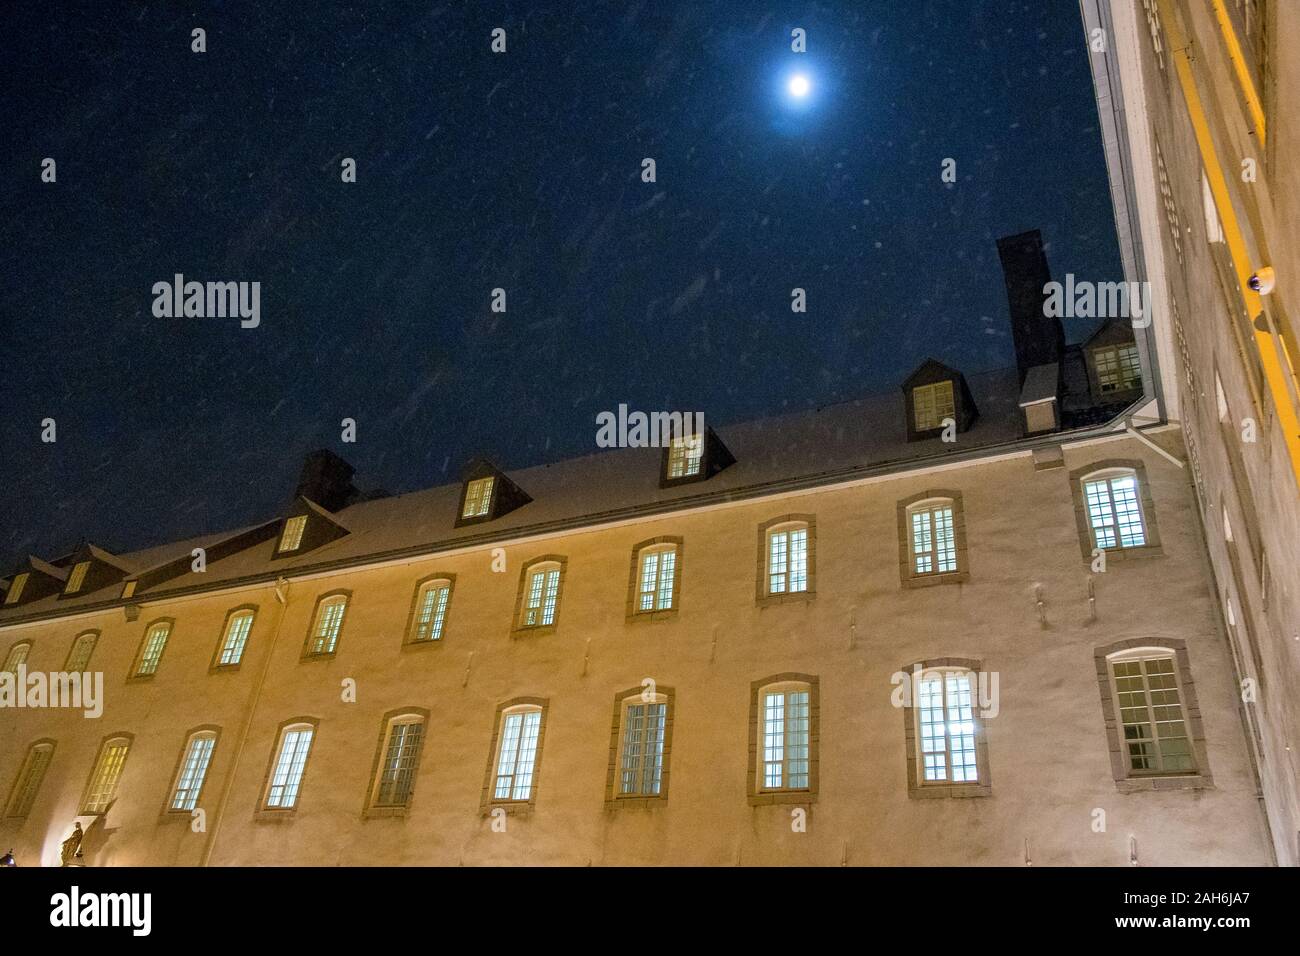 Clair de lune sur un édifice du séminaire historique, vieille ville de Québec, Canada Banque D'Images